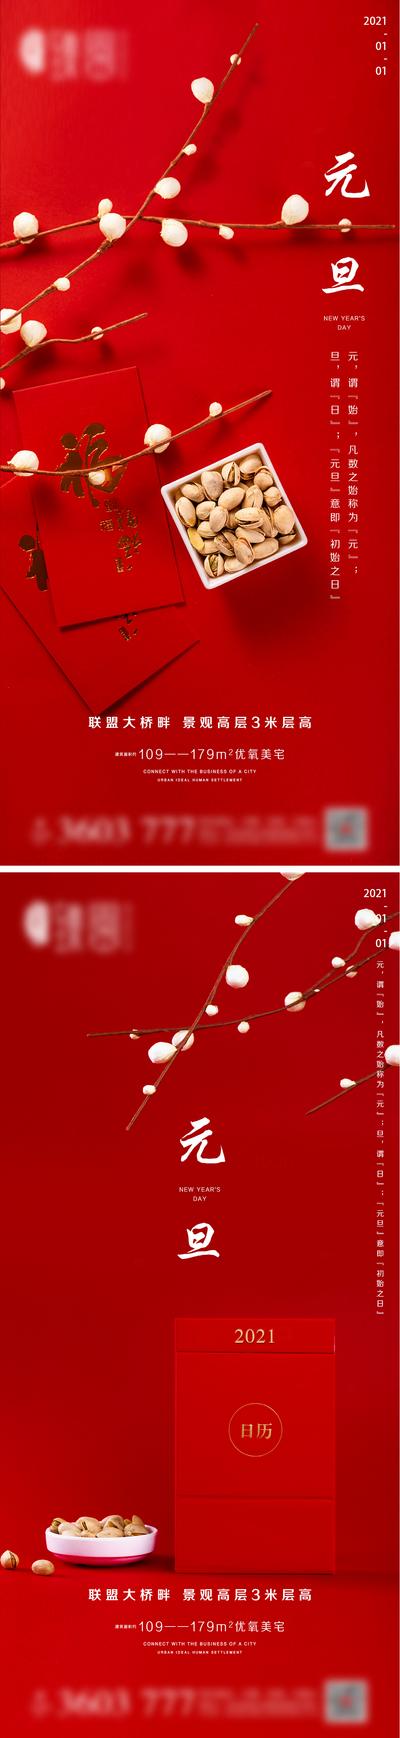 南门网 海报 房地产 中国传统节日 元旦 新年 红金 喜庆 红包 系列